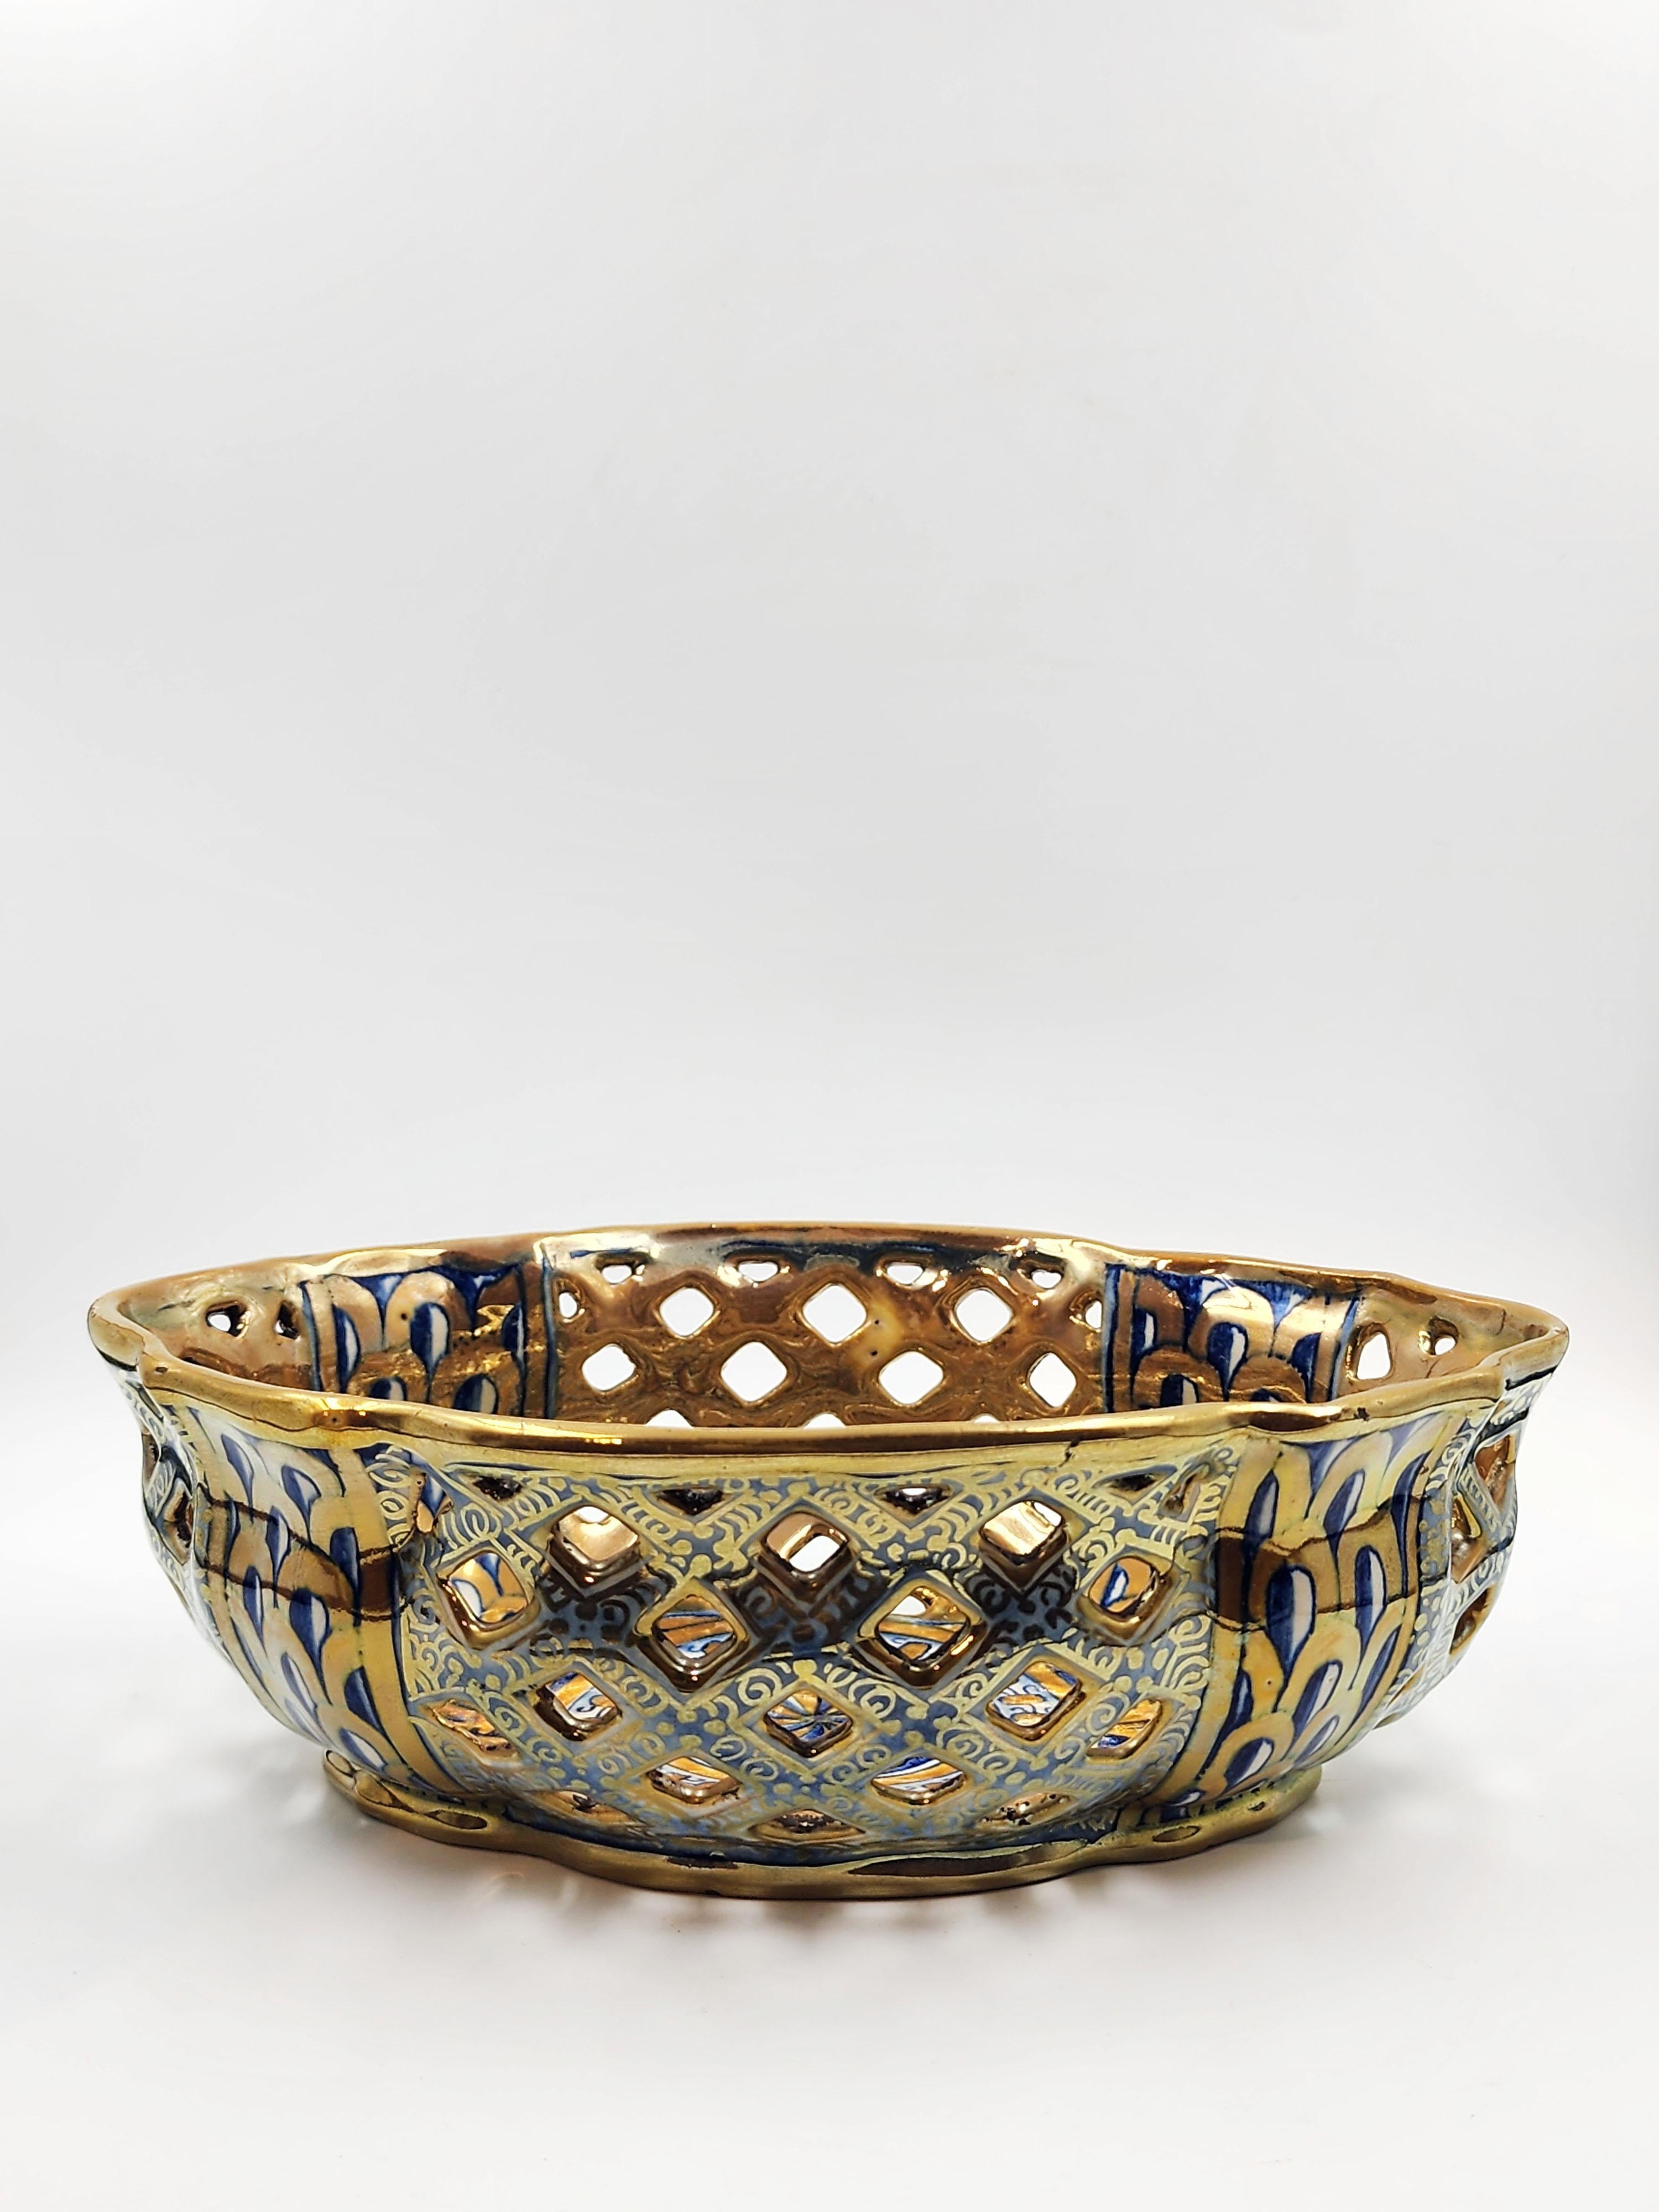 Italienisches Keramikzentrum mit Cantagalli-Siegel der Manufaktur
Schöner italienischer Keramikaufsatz mit einer hellen goldenen Farbe, die in der Mitte an Präsenz gewinnt, und mit blauen Details und einem geometrischen und symmetrischen Muster, das